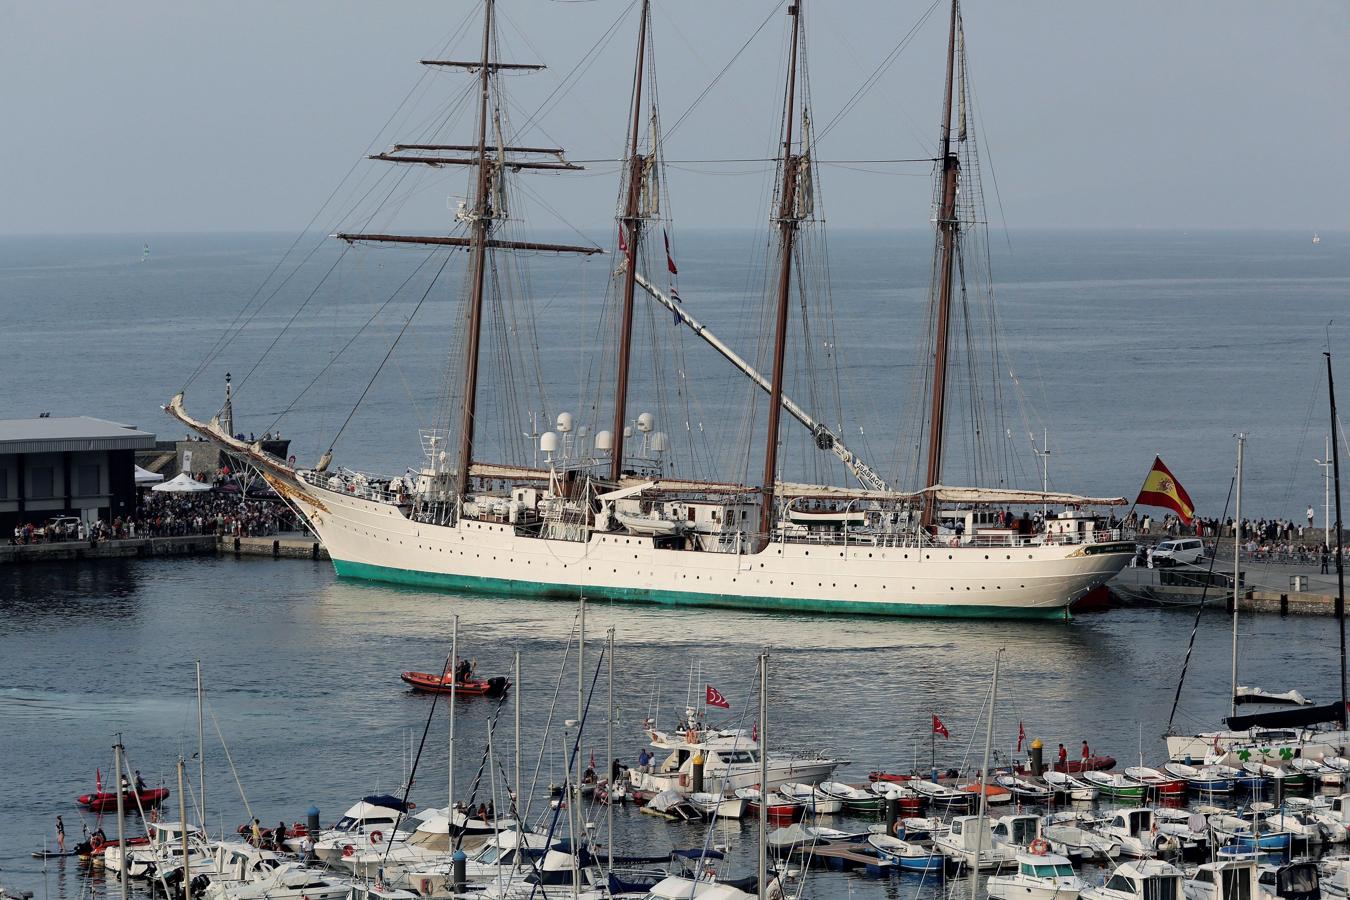 Imponente silueta. El buque escuela Juan Sebastián Elcano llega al puerto de Getaria (Guipúzcoa), que este fin de semana conmemorará el 500 aniversario de la gesta del marinero vasco y los 17 tripulantes que le acompañaban